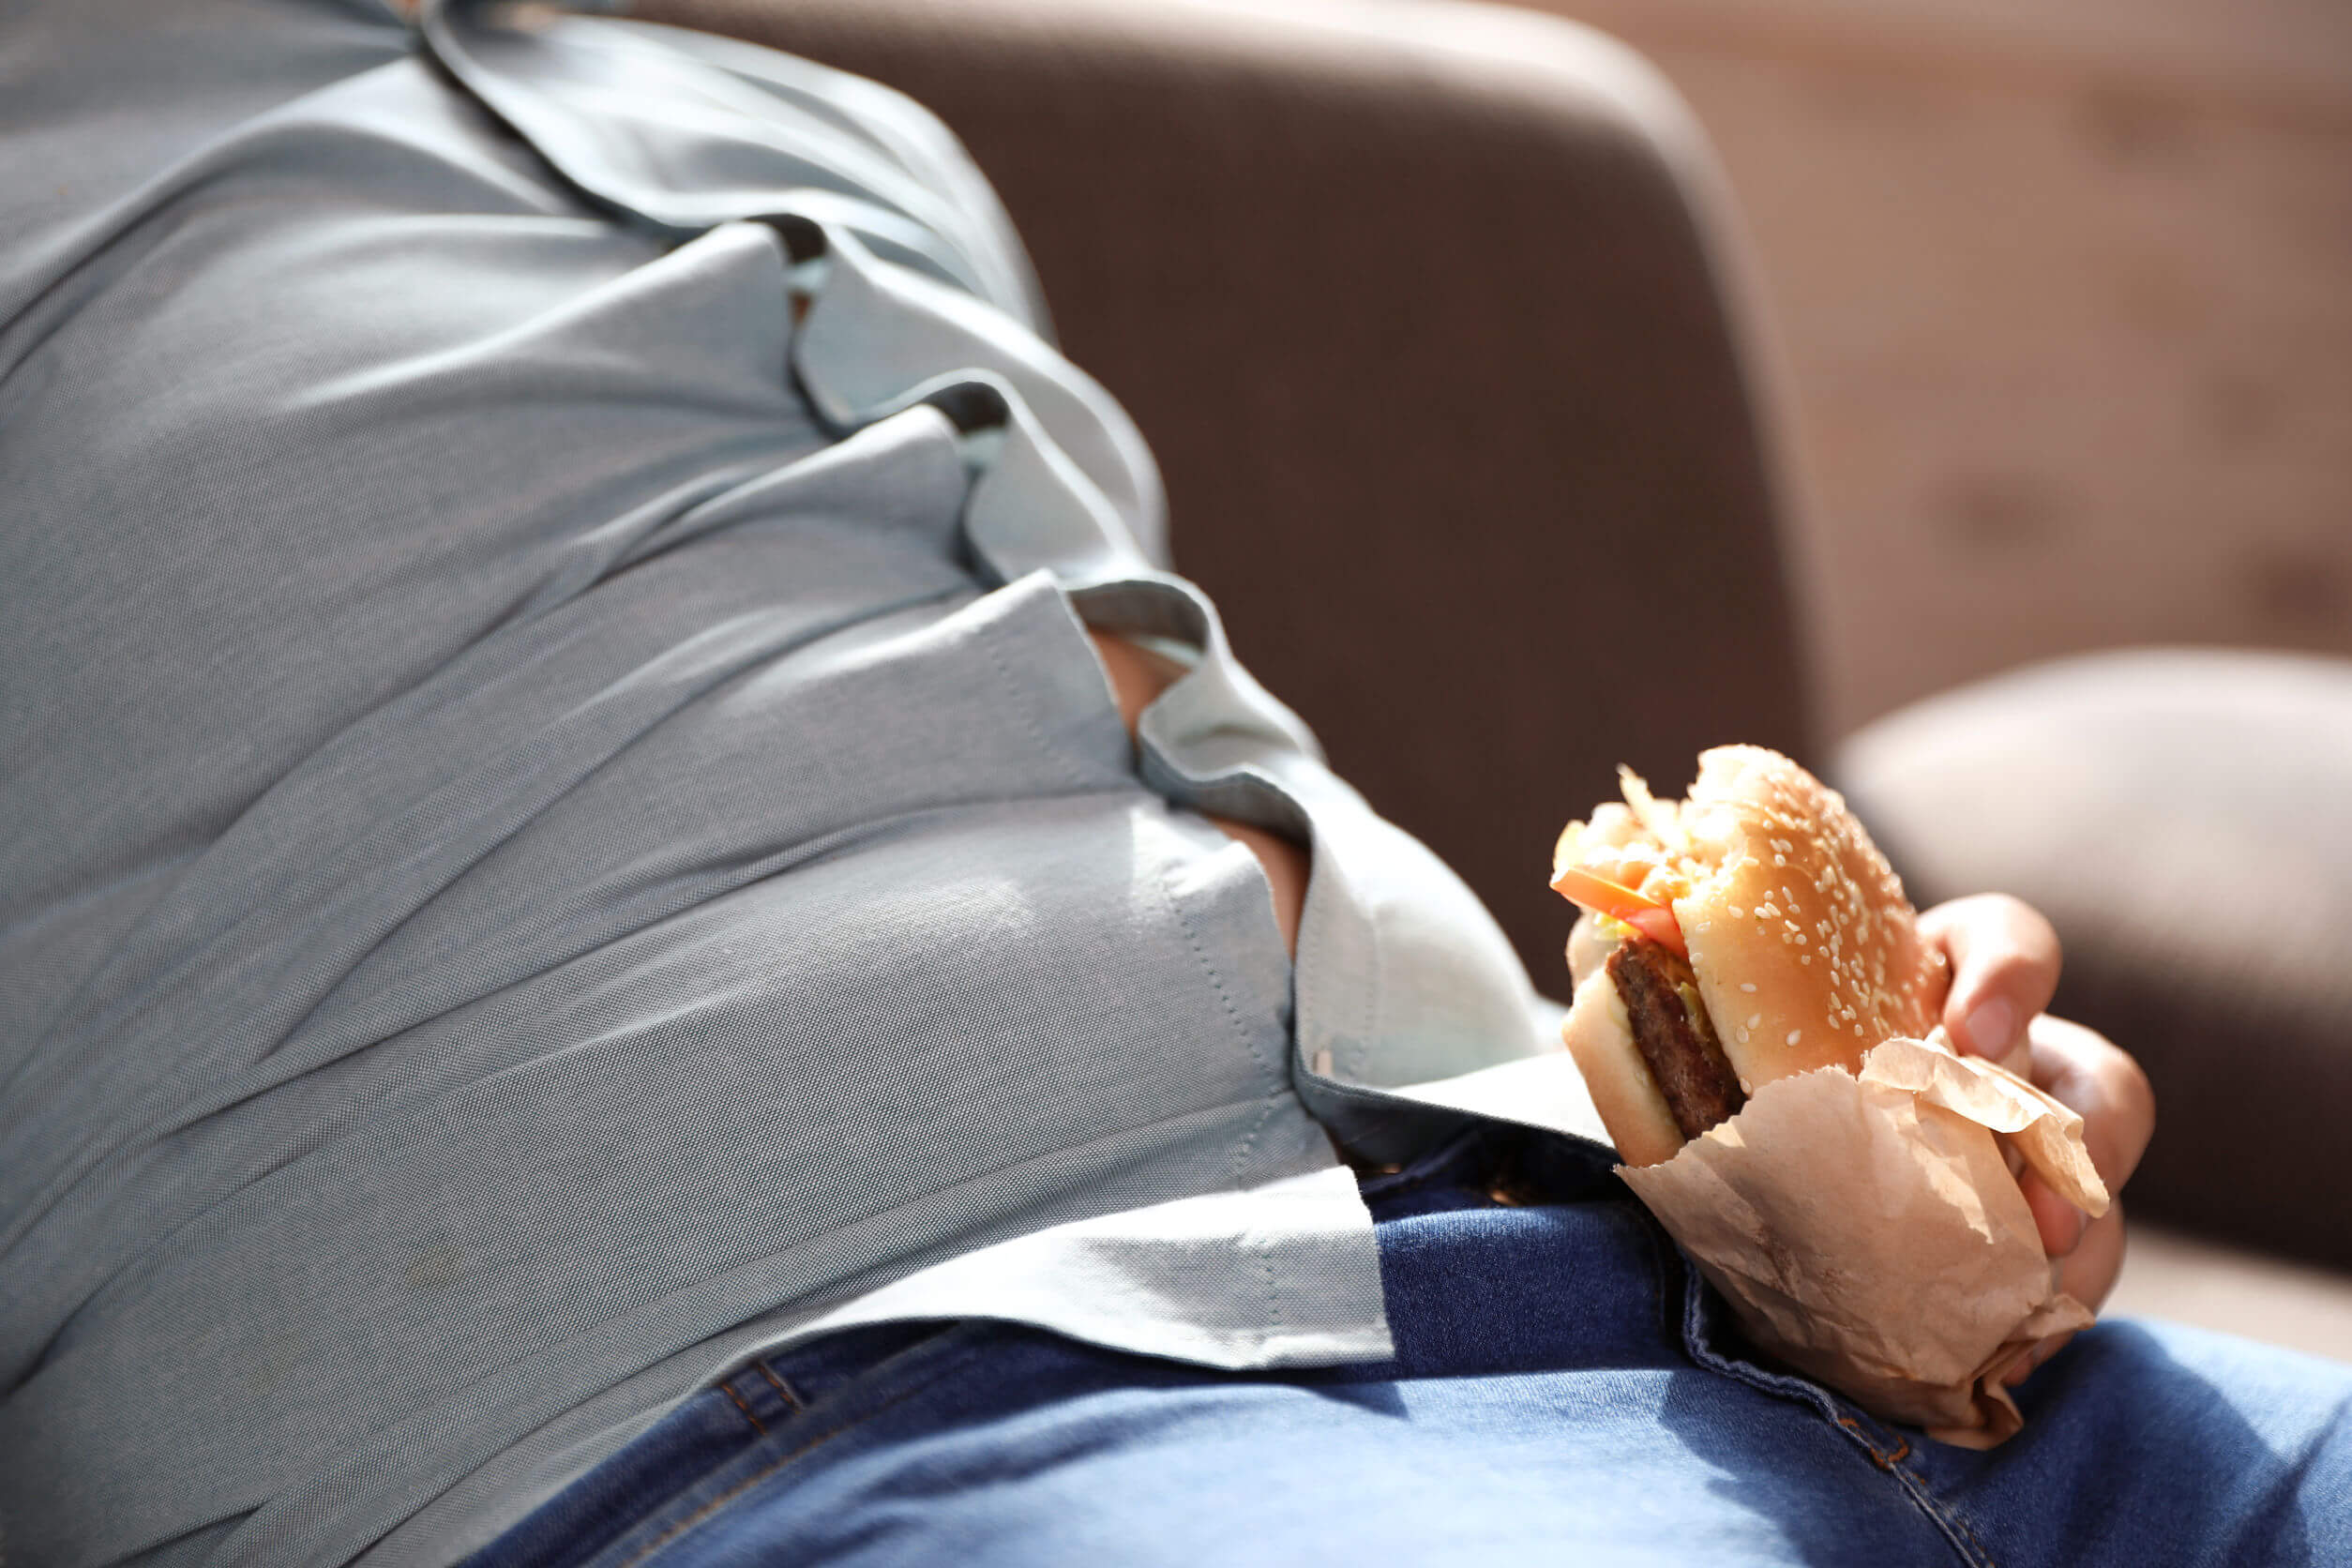 Si nous continuons à manger l'estomac plein, la prise de poids est inévitable.